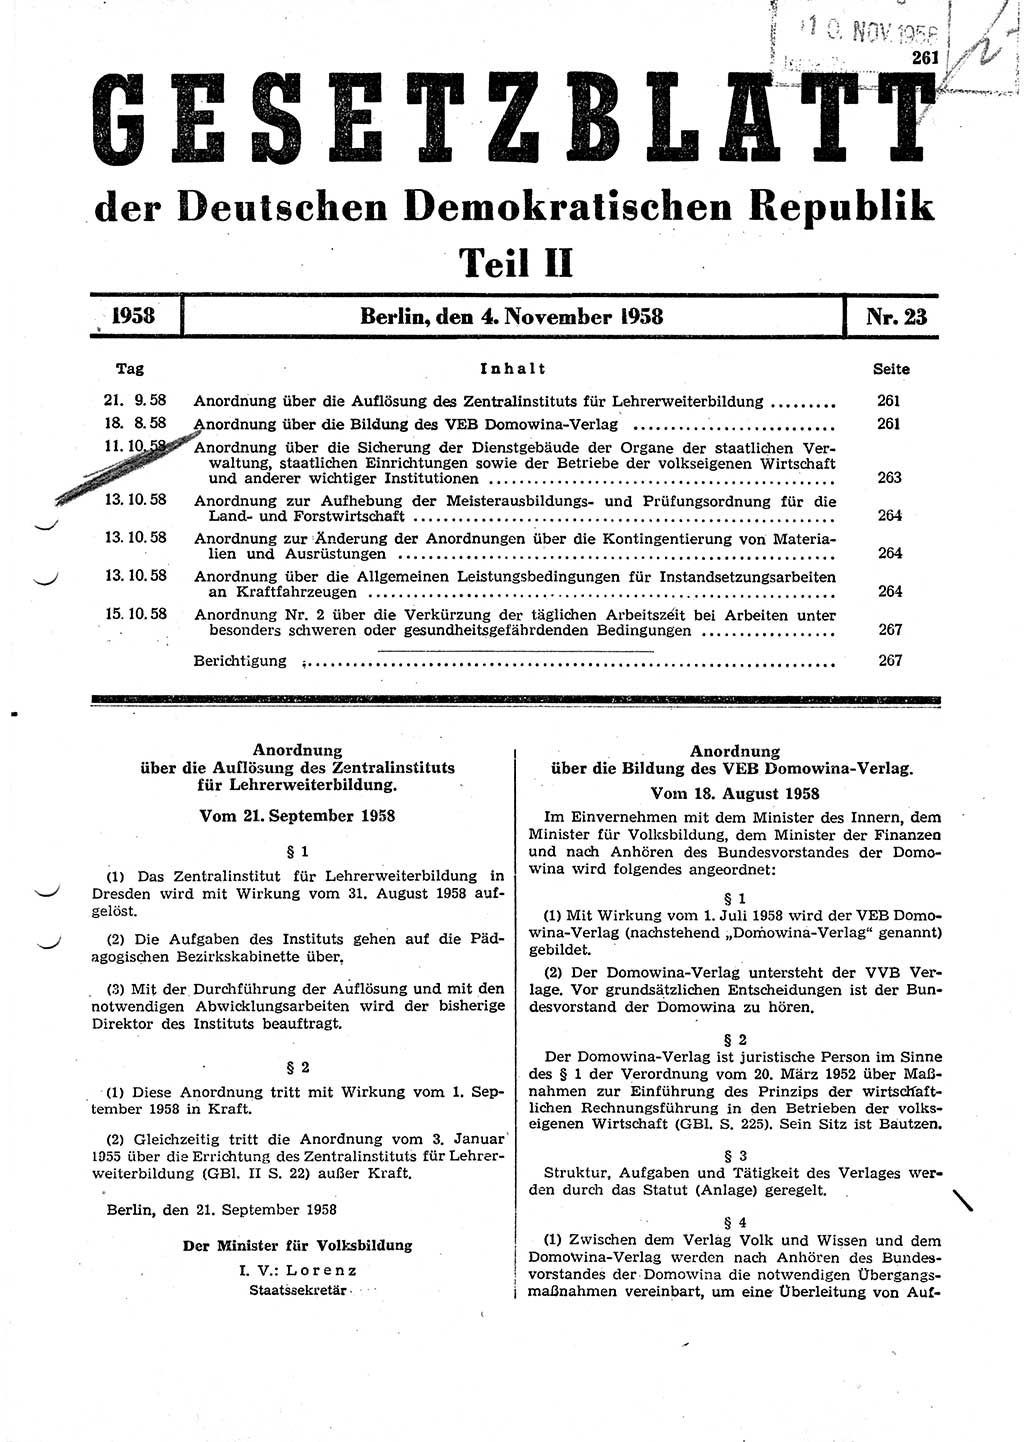 Gesetzblatt (GBl.) der Deutschen Demokratischen Republik (DDR) Teil ⅠⅠ 1958, Seite 261 (GBl. DDR ⅠⅠ 1958, S. 261)